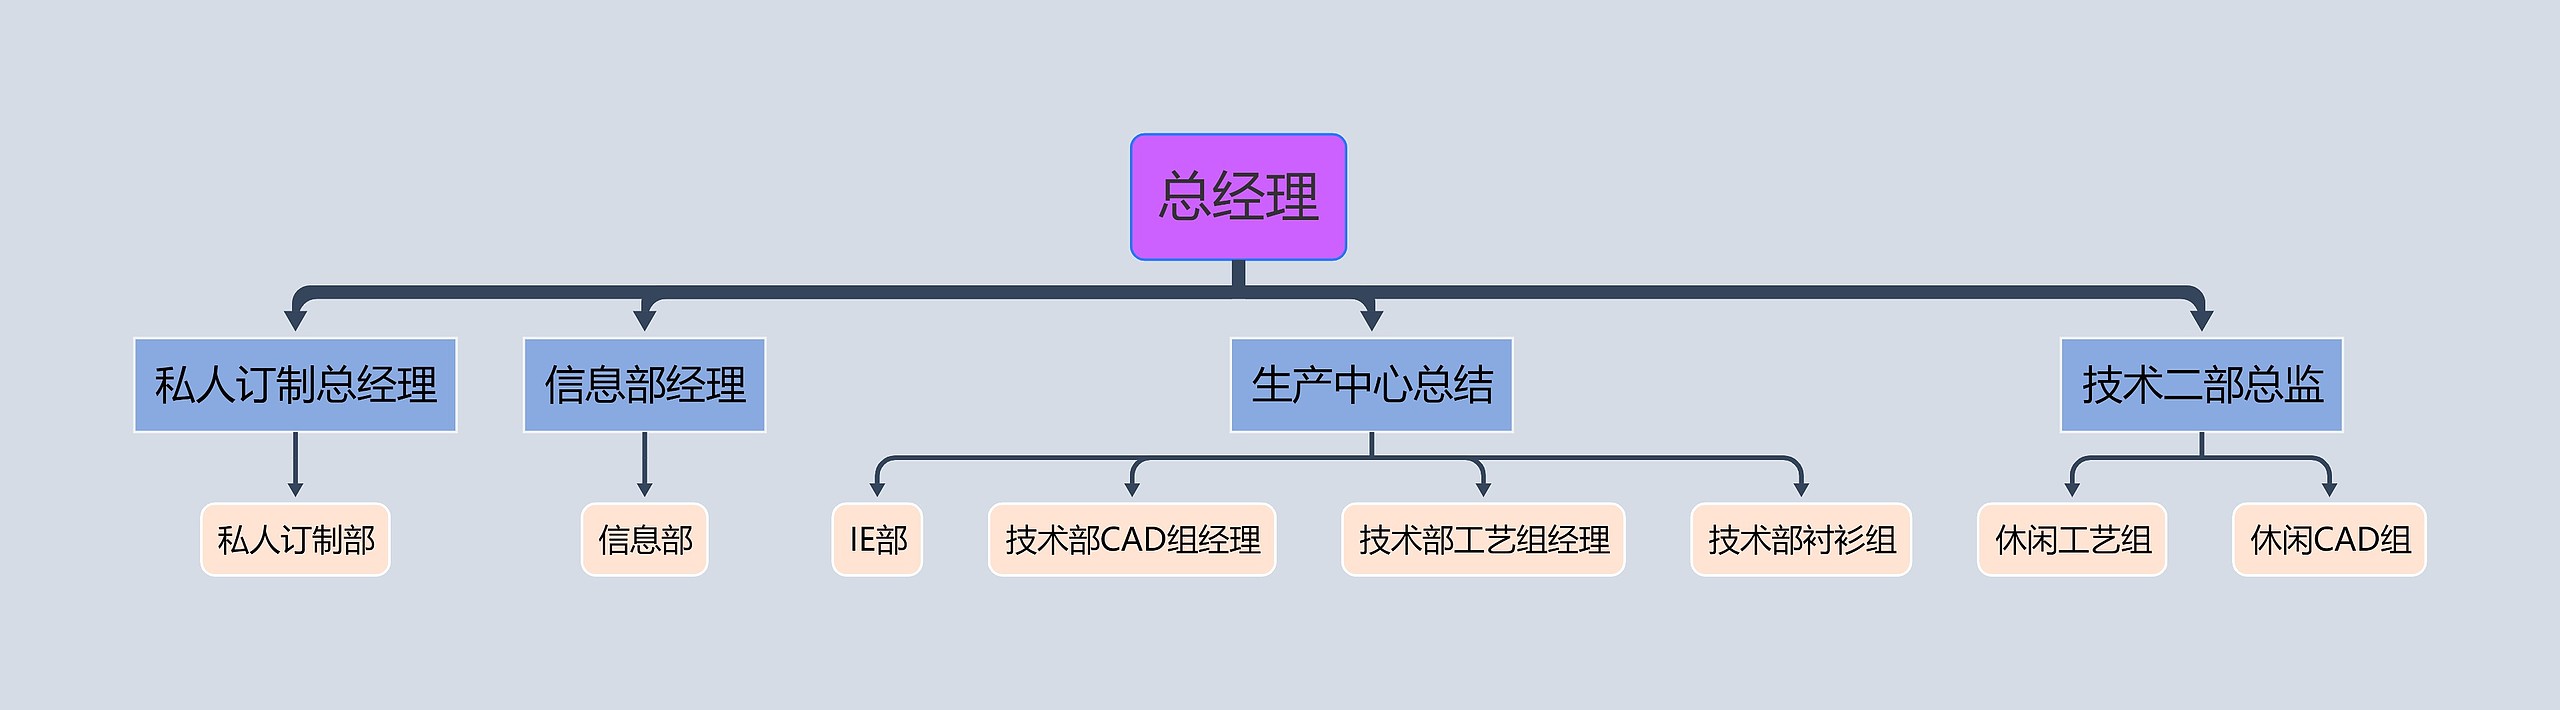 信息化项目组组织结构图